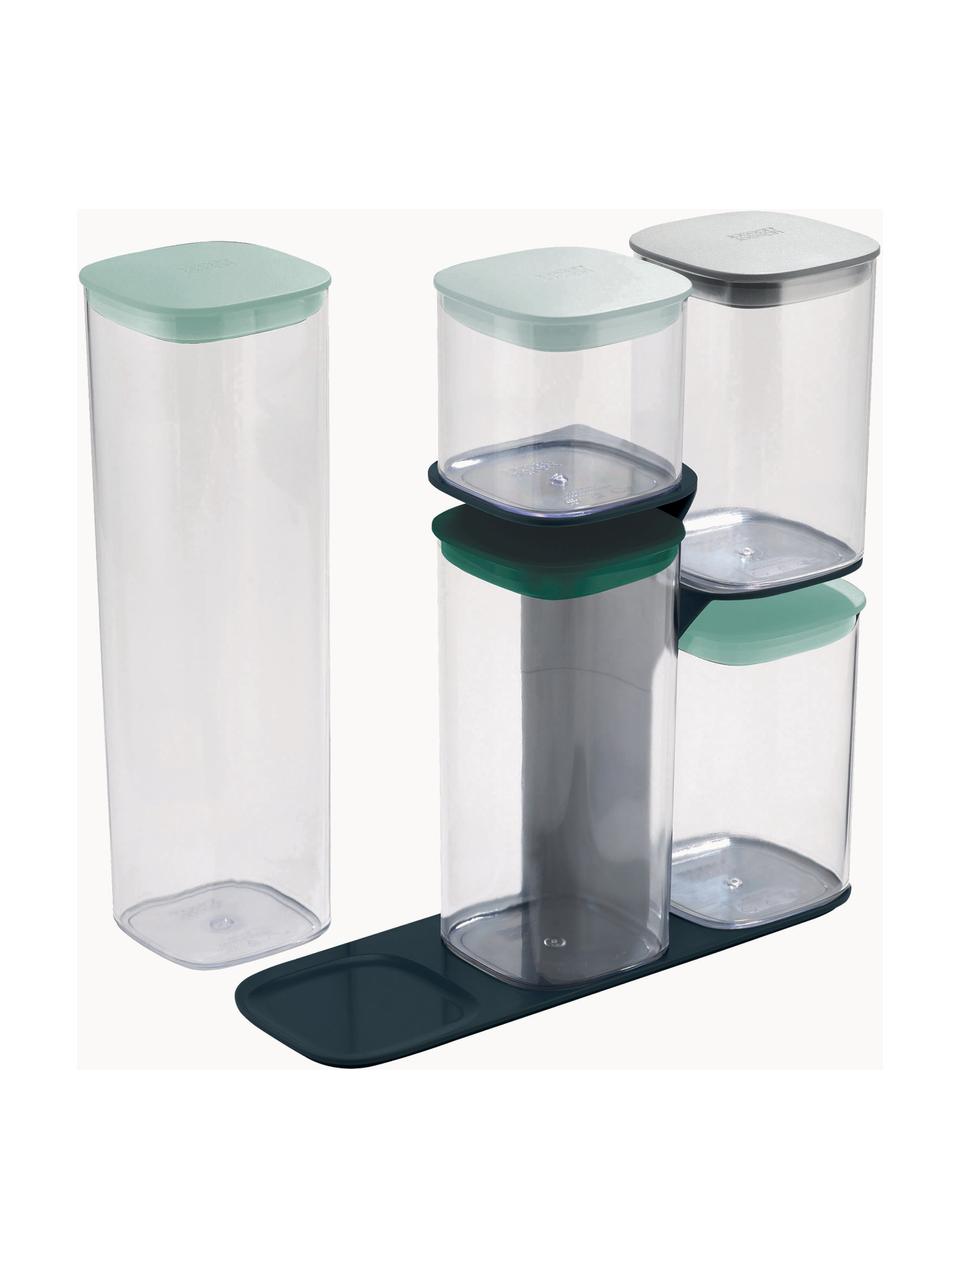 Aufbewahrungsbehälter Podium, 6er-Set, SAN-Kunststoff, Silikon, HIPS-Kunststoff, Grüntöne, Transparent, Set mit verschiedenen Größen